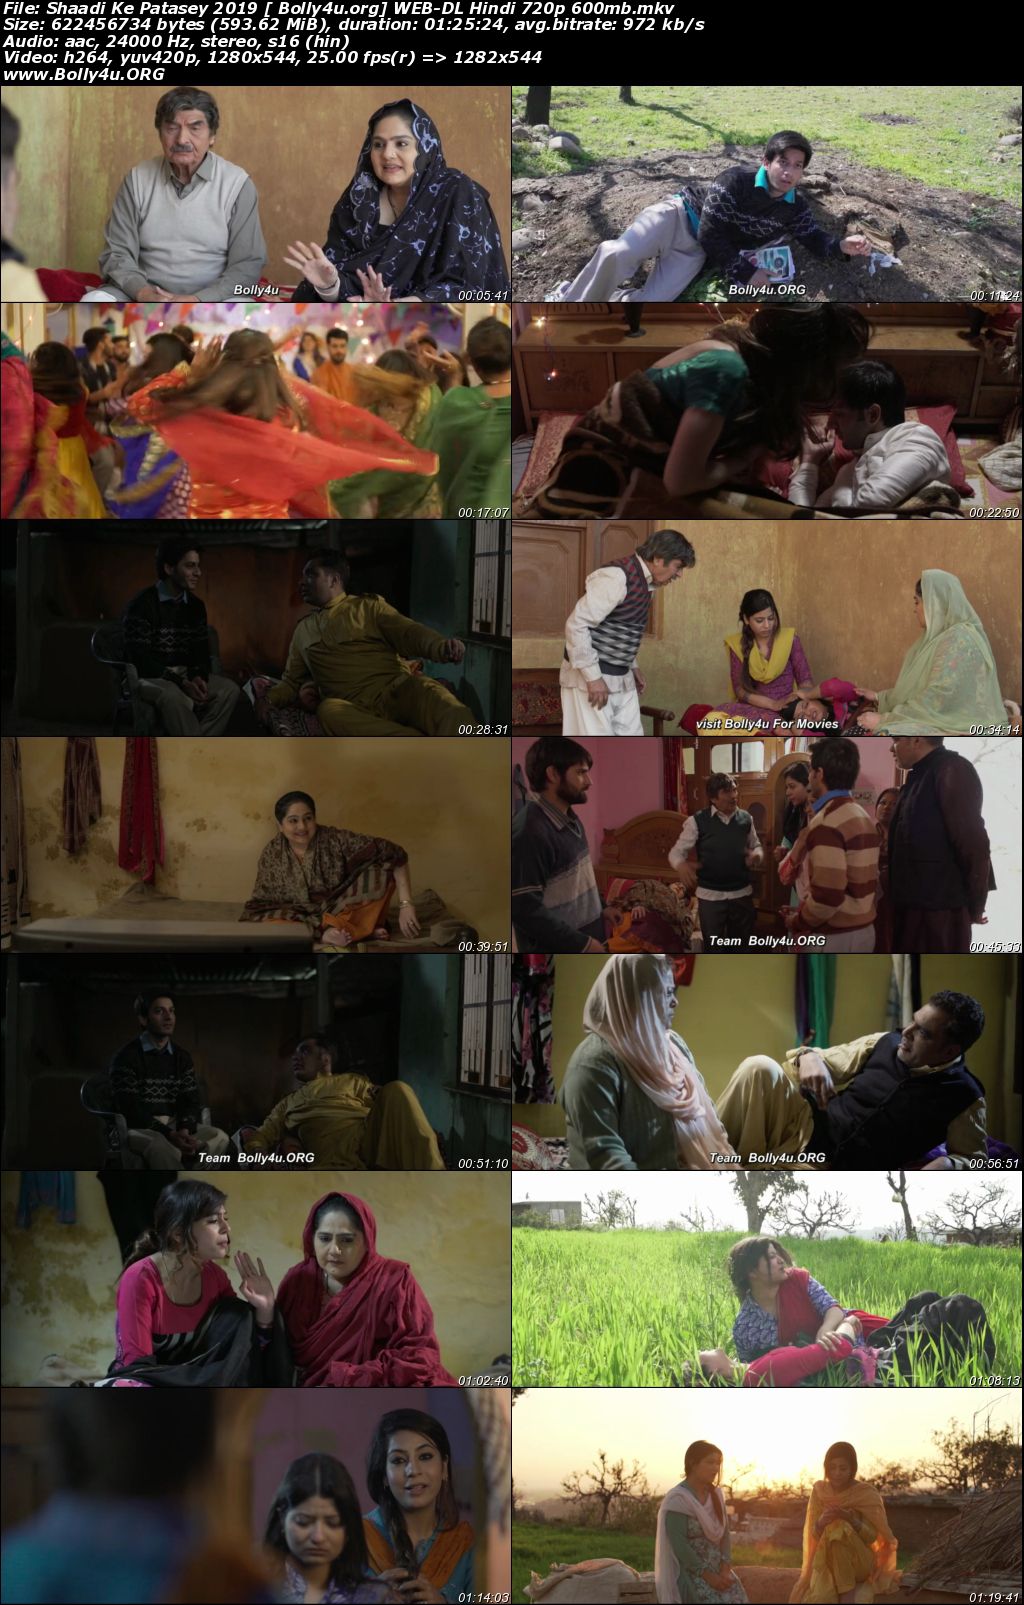 Shaadi Ke Patasey 2019 WEB-DL 270Mb Hindi Movie Download 480p